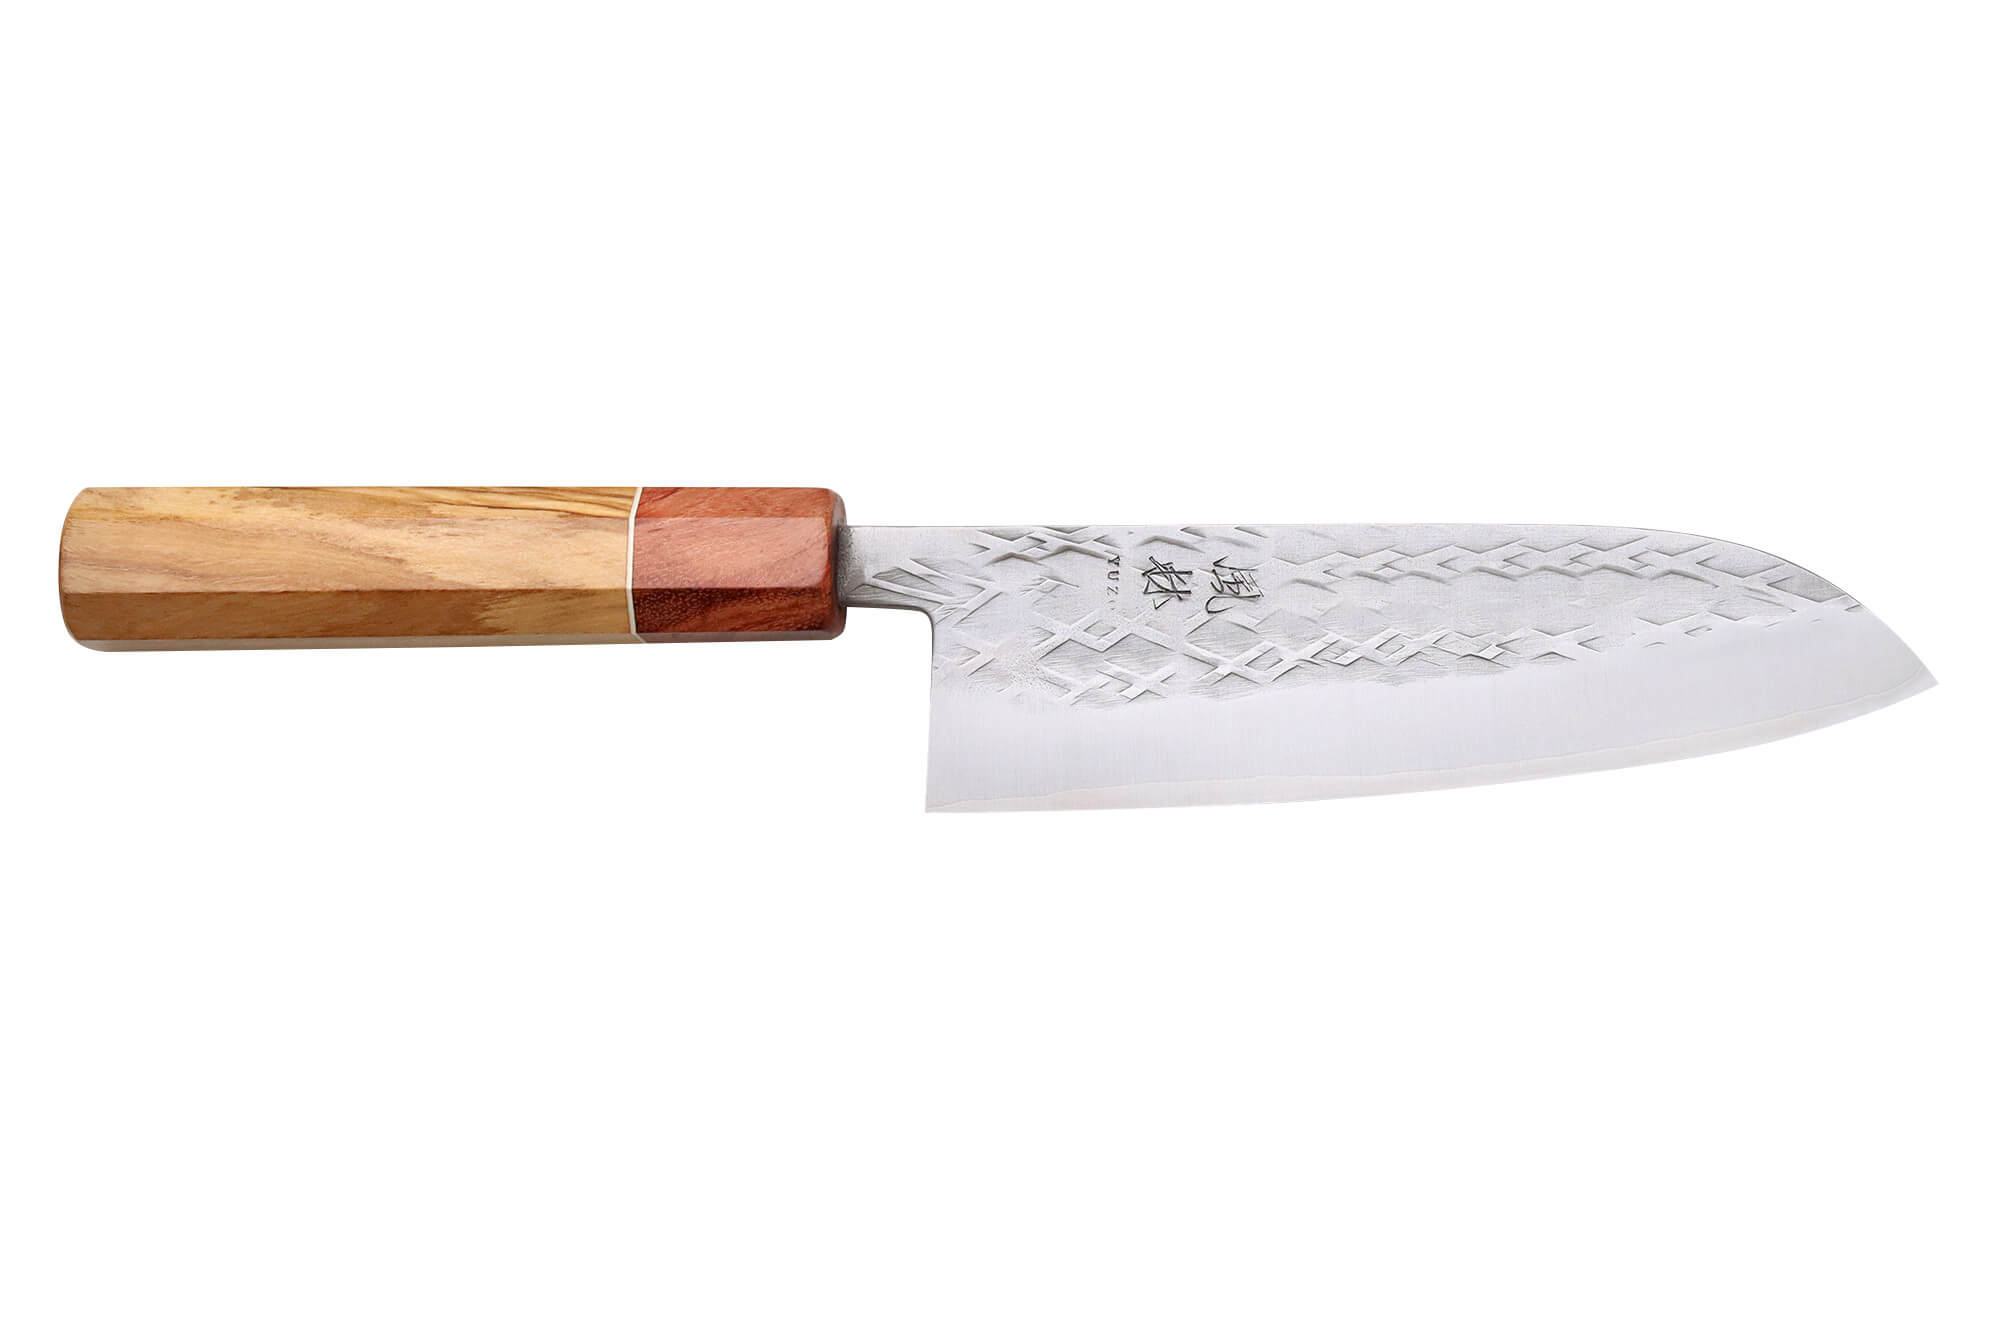 5 couteaux GEORGES artisanaux : santoku, cuisine, office, pain, steak